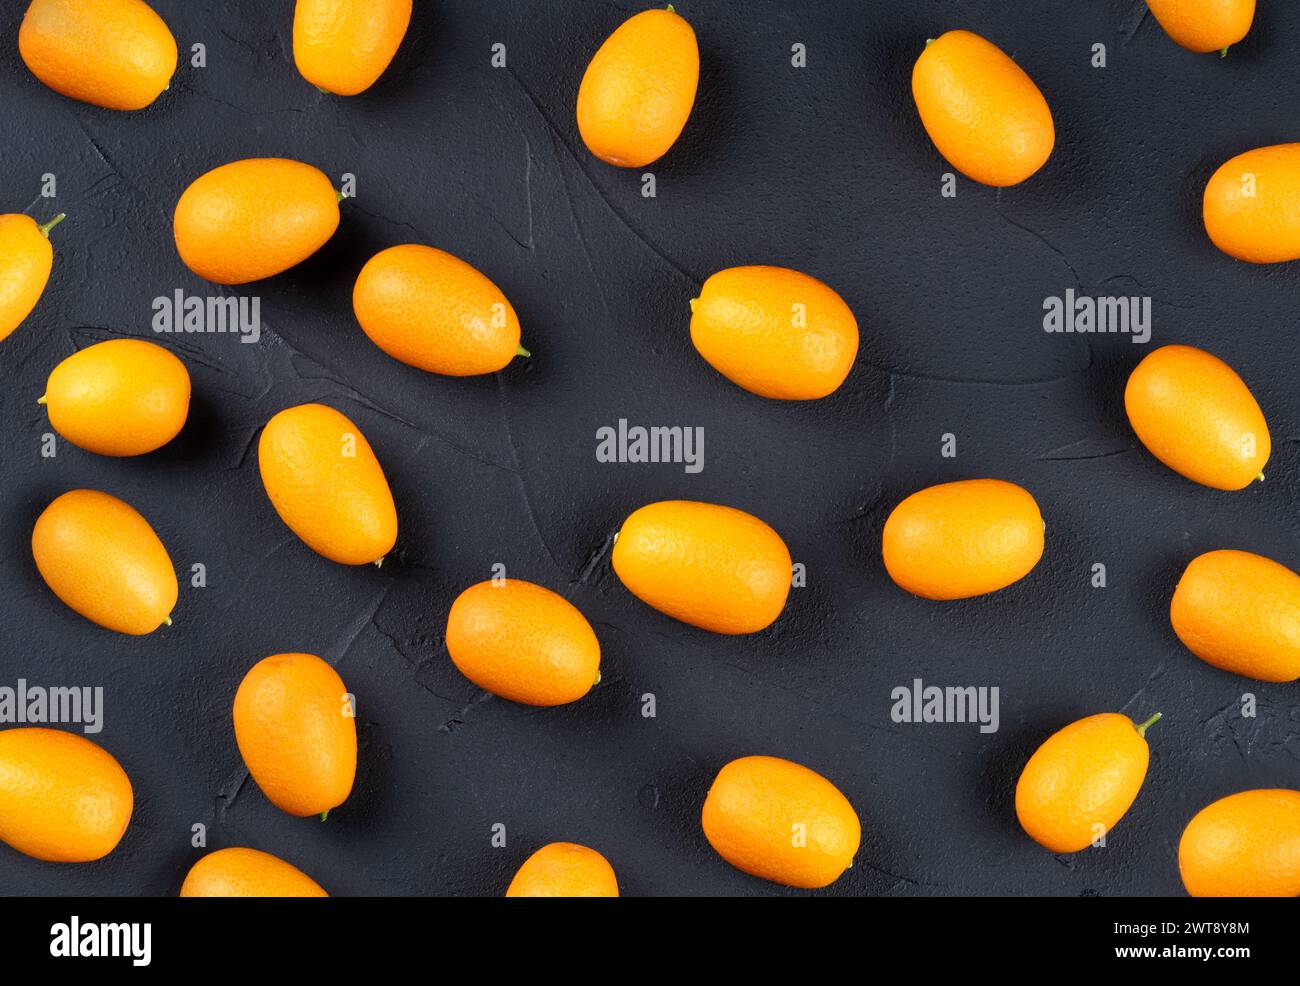 Fruits kumquat frais dispersés sur un fond sombre, vue de dessus Banque D'Images